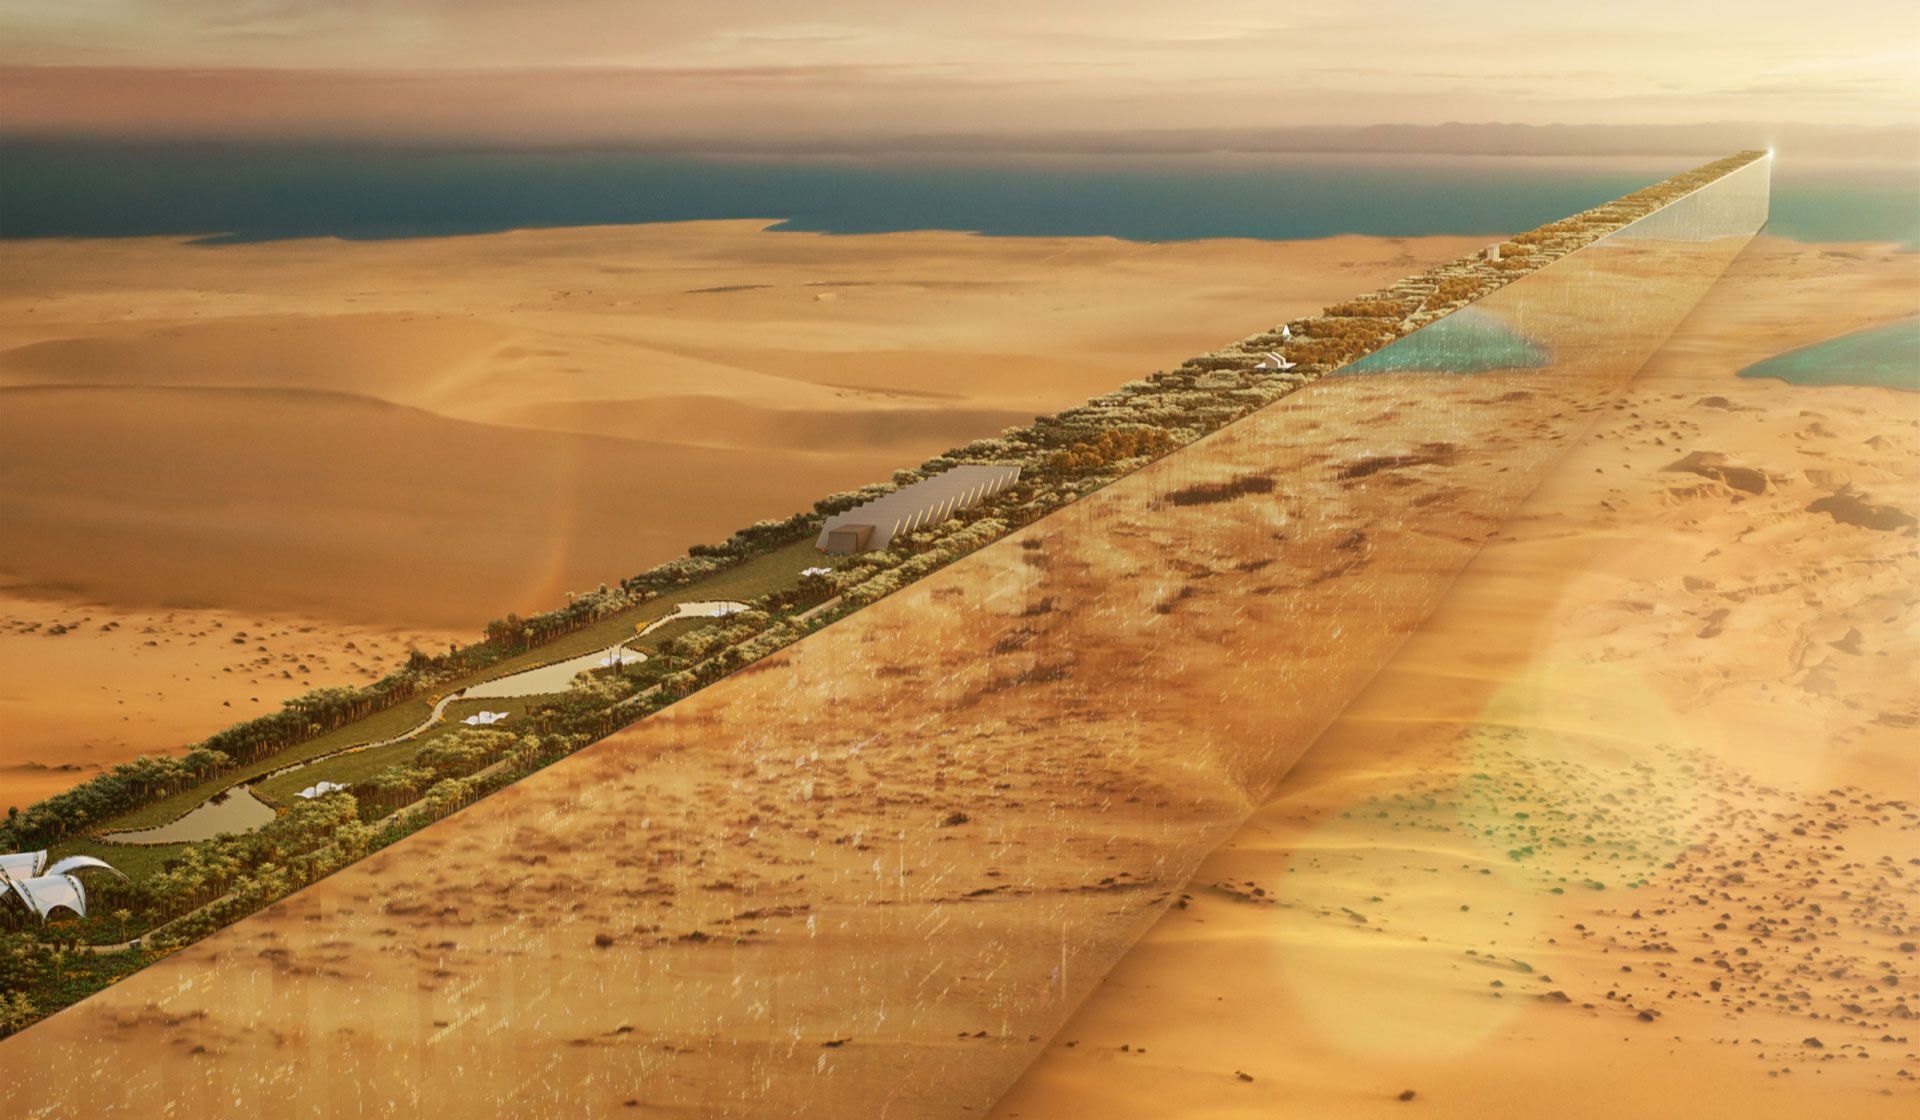 サウジアラビア、全長170km・高さ500mの垂直性未来都市「THE LINE」の開発計画を発表